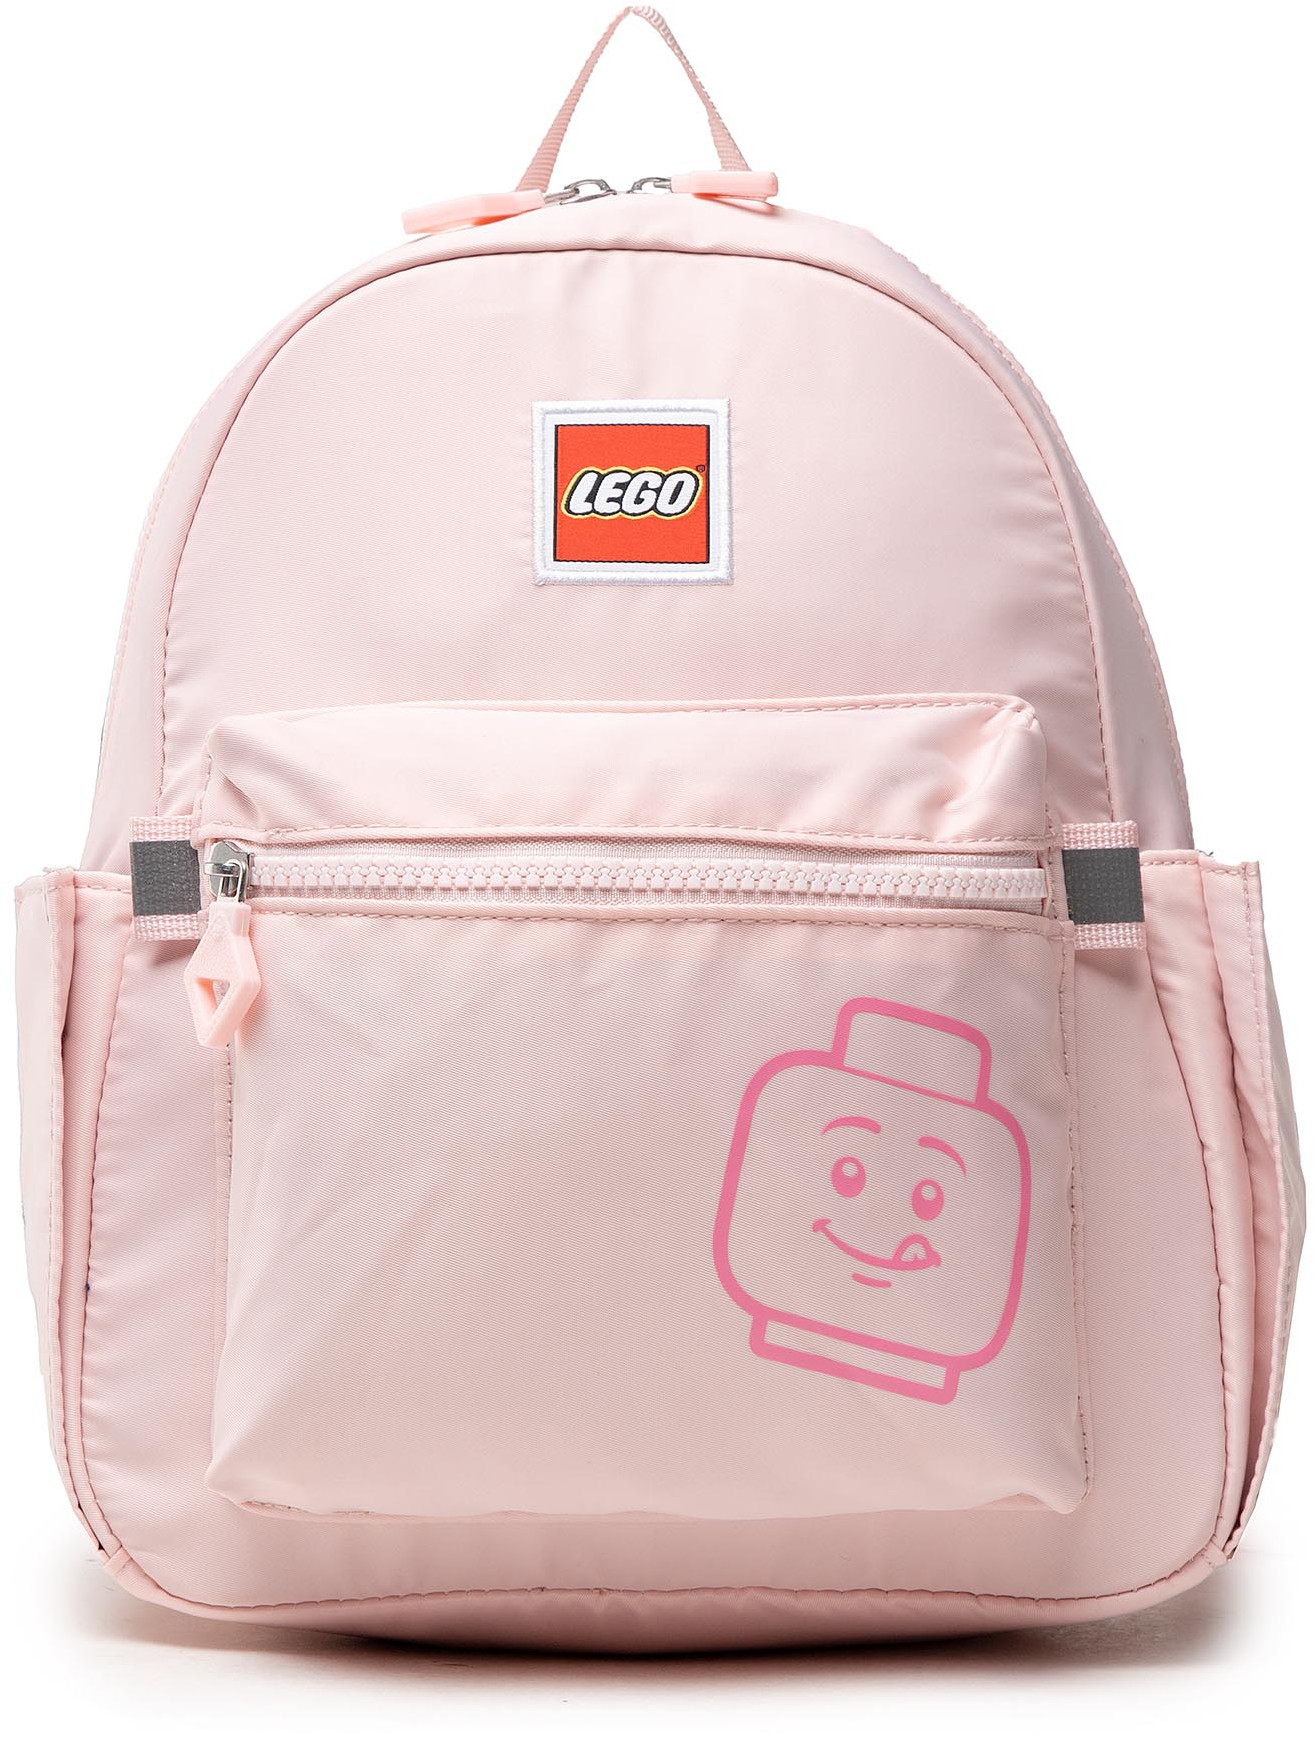 Plecak LEGO - 20129-1935  Różowy